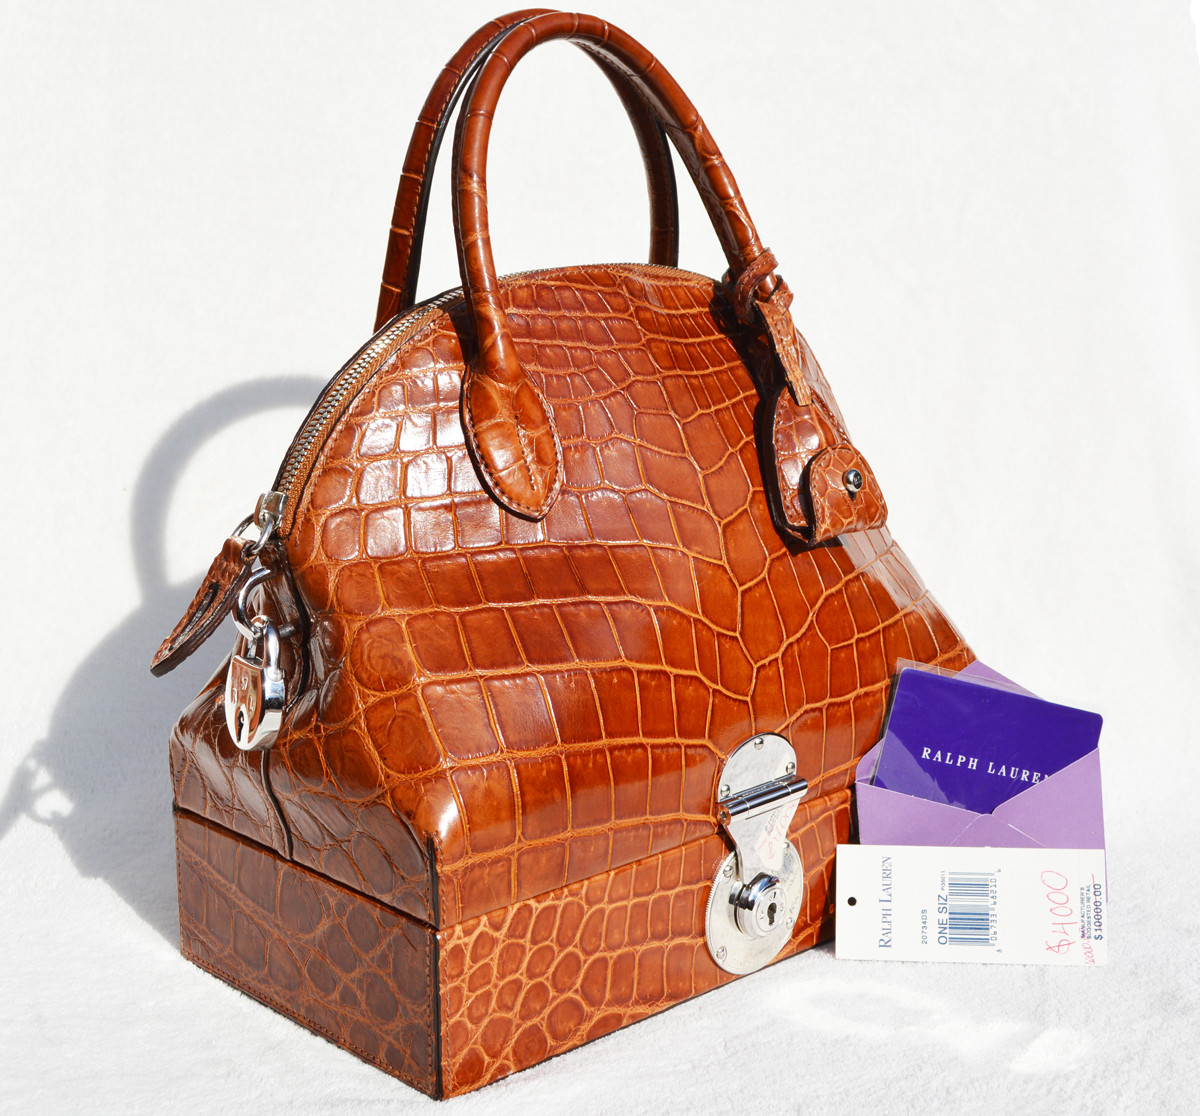 New! Cognac RALPH LAUREN Alligator Belly Skin RICKY Bag - SAC MALLETTE  Handbag - Tags! - Vintage Skins